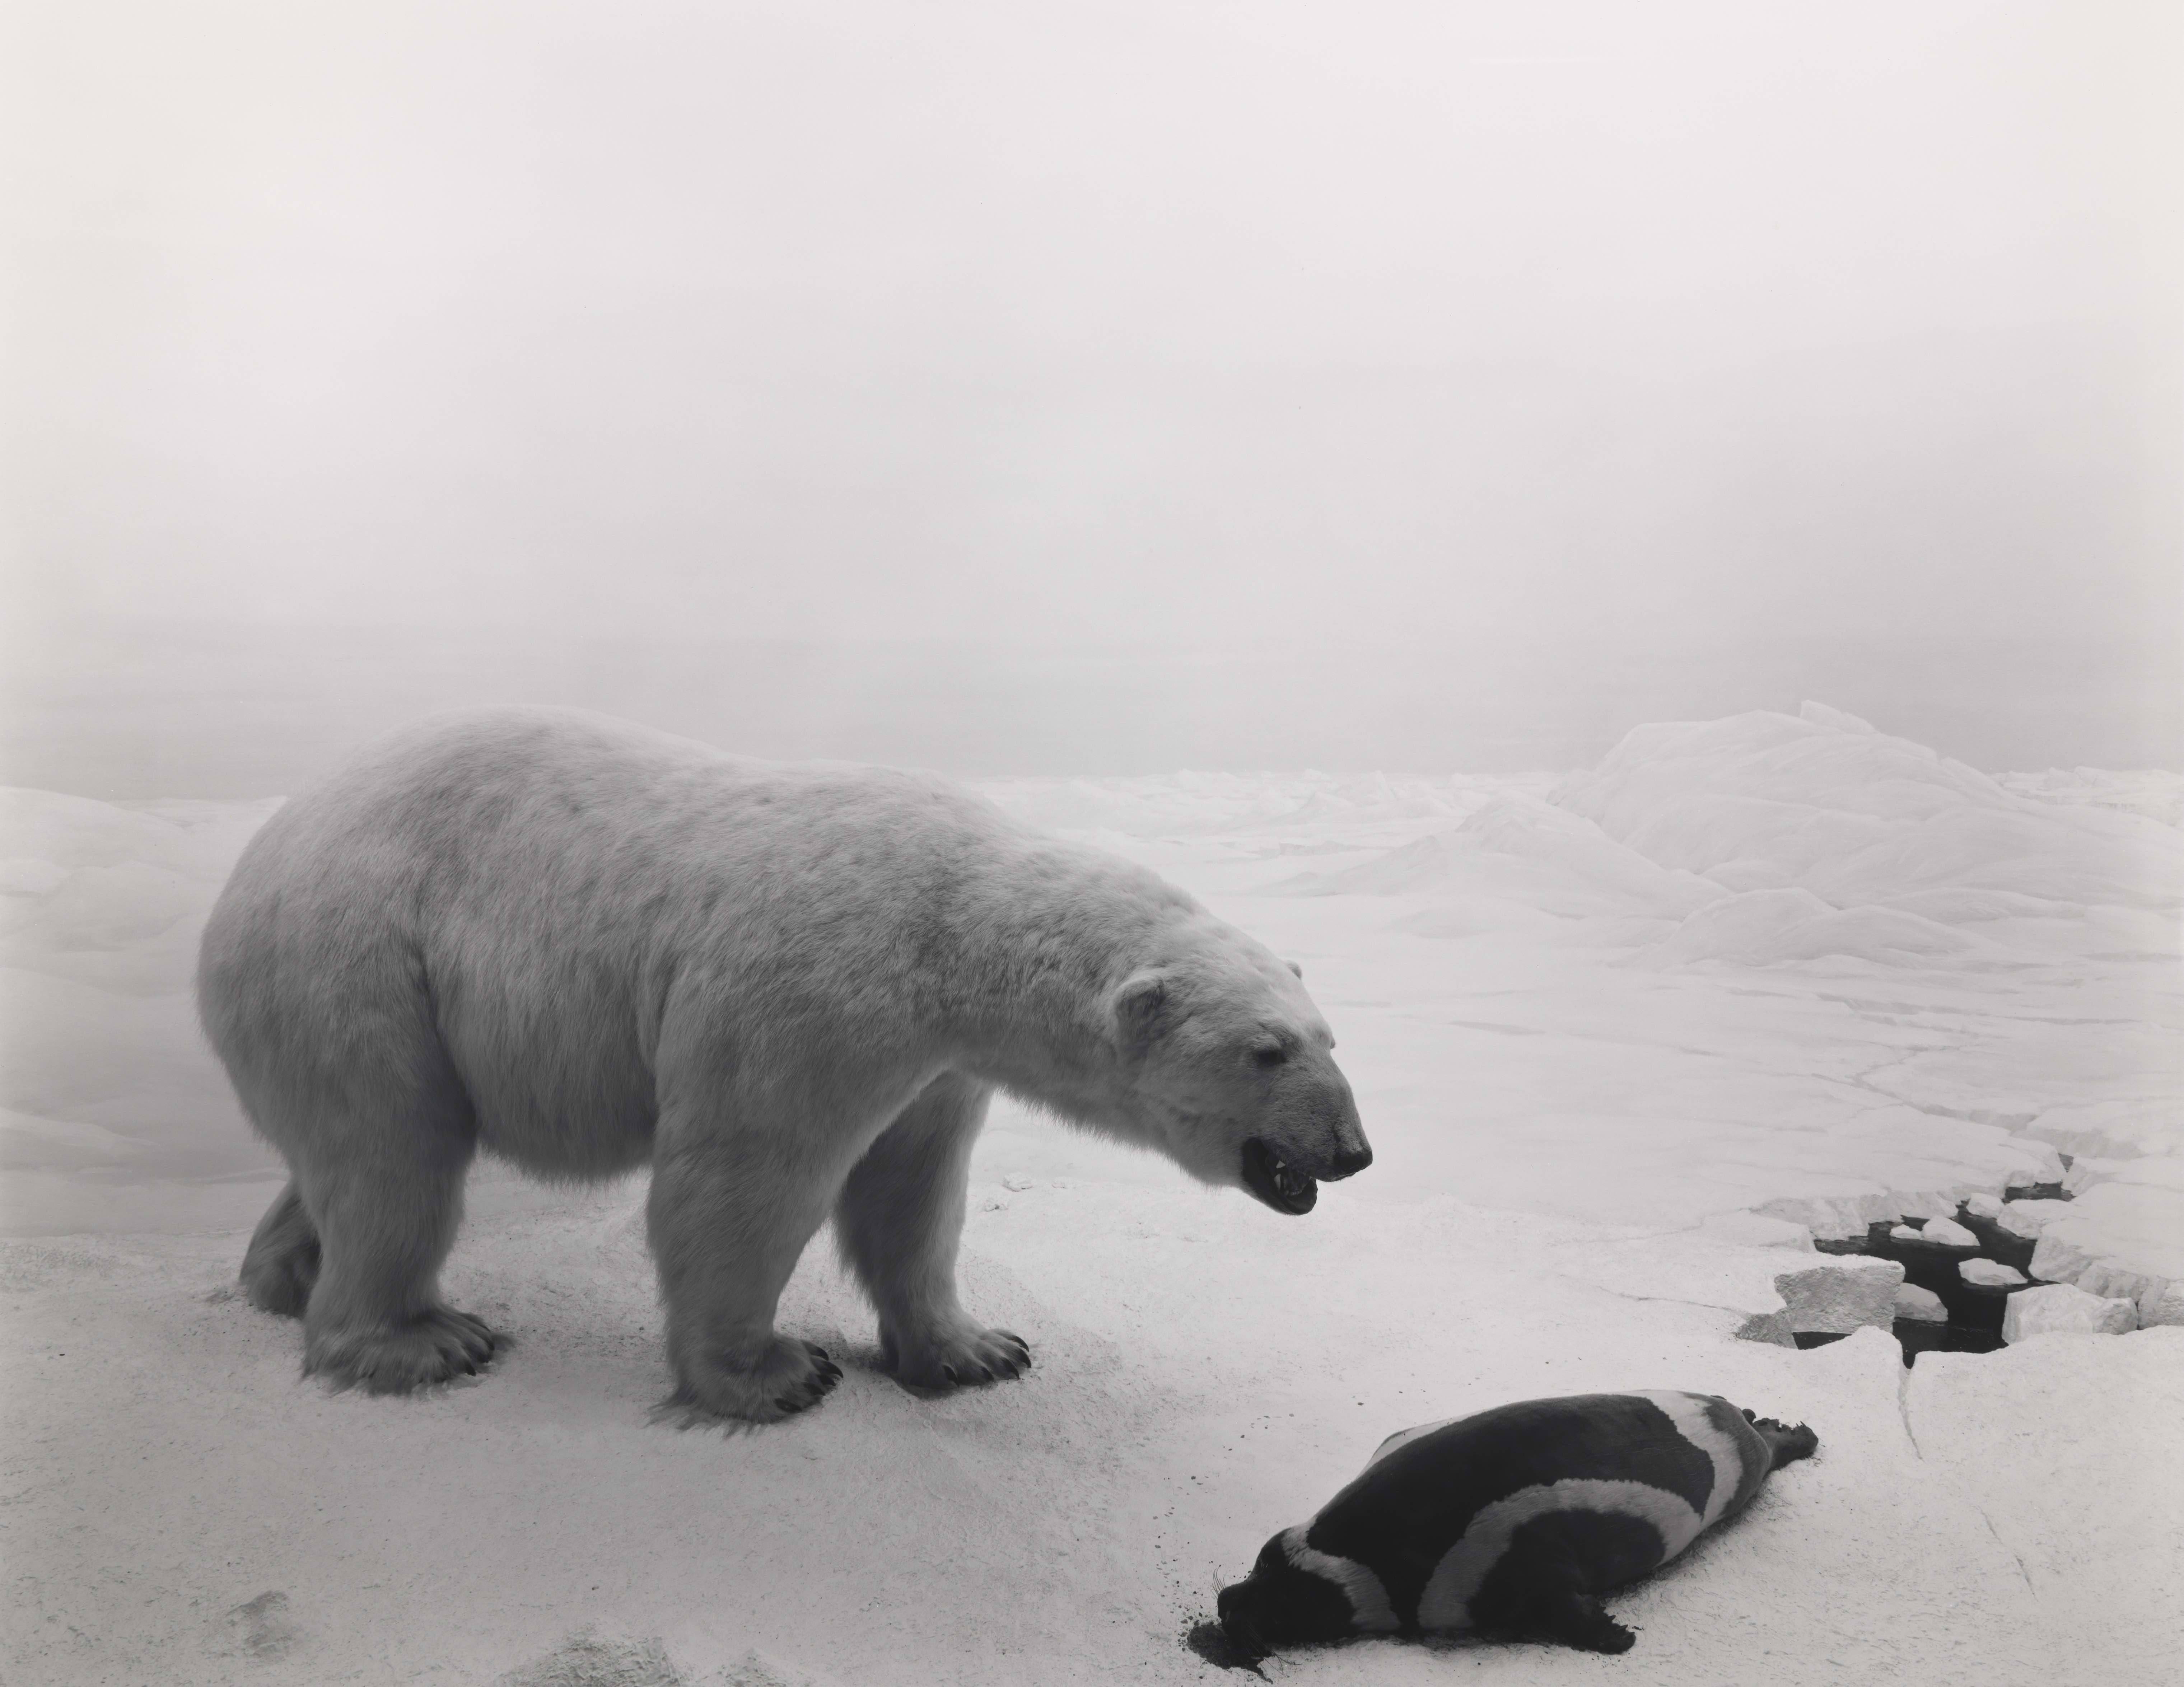 Hiroshi Sugimoto, Polar Bear, 1976. © Hiroshi Sugimoto（圖片來源：Hiroshi Sugimoto）